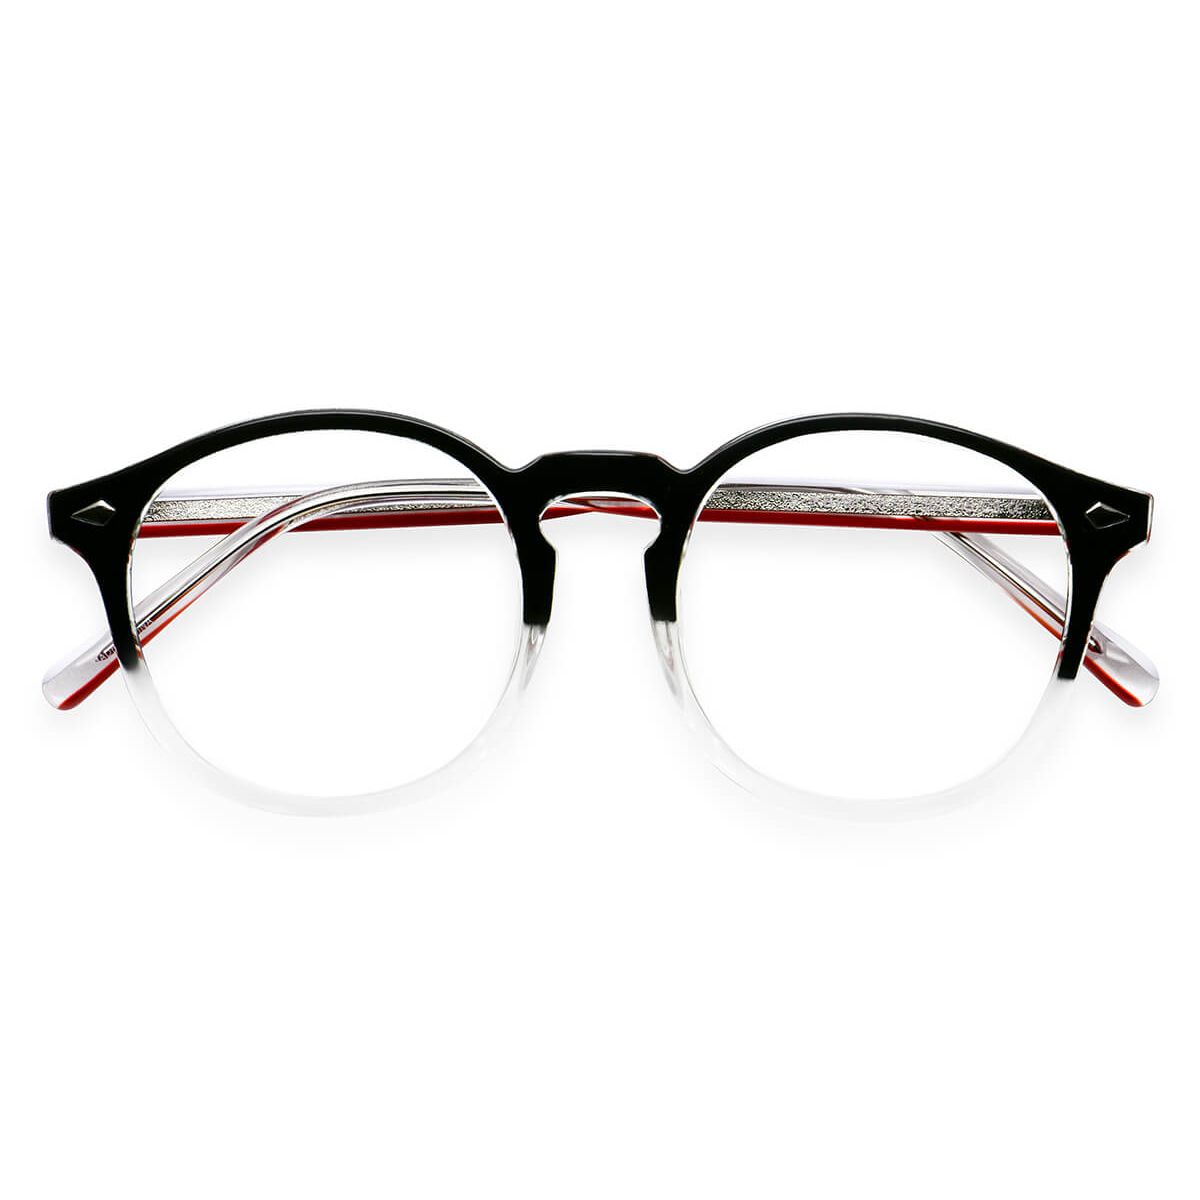 Kbt98326 Round Black Eyeglasses Frames Leoptique